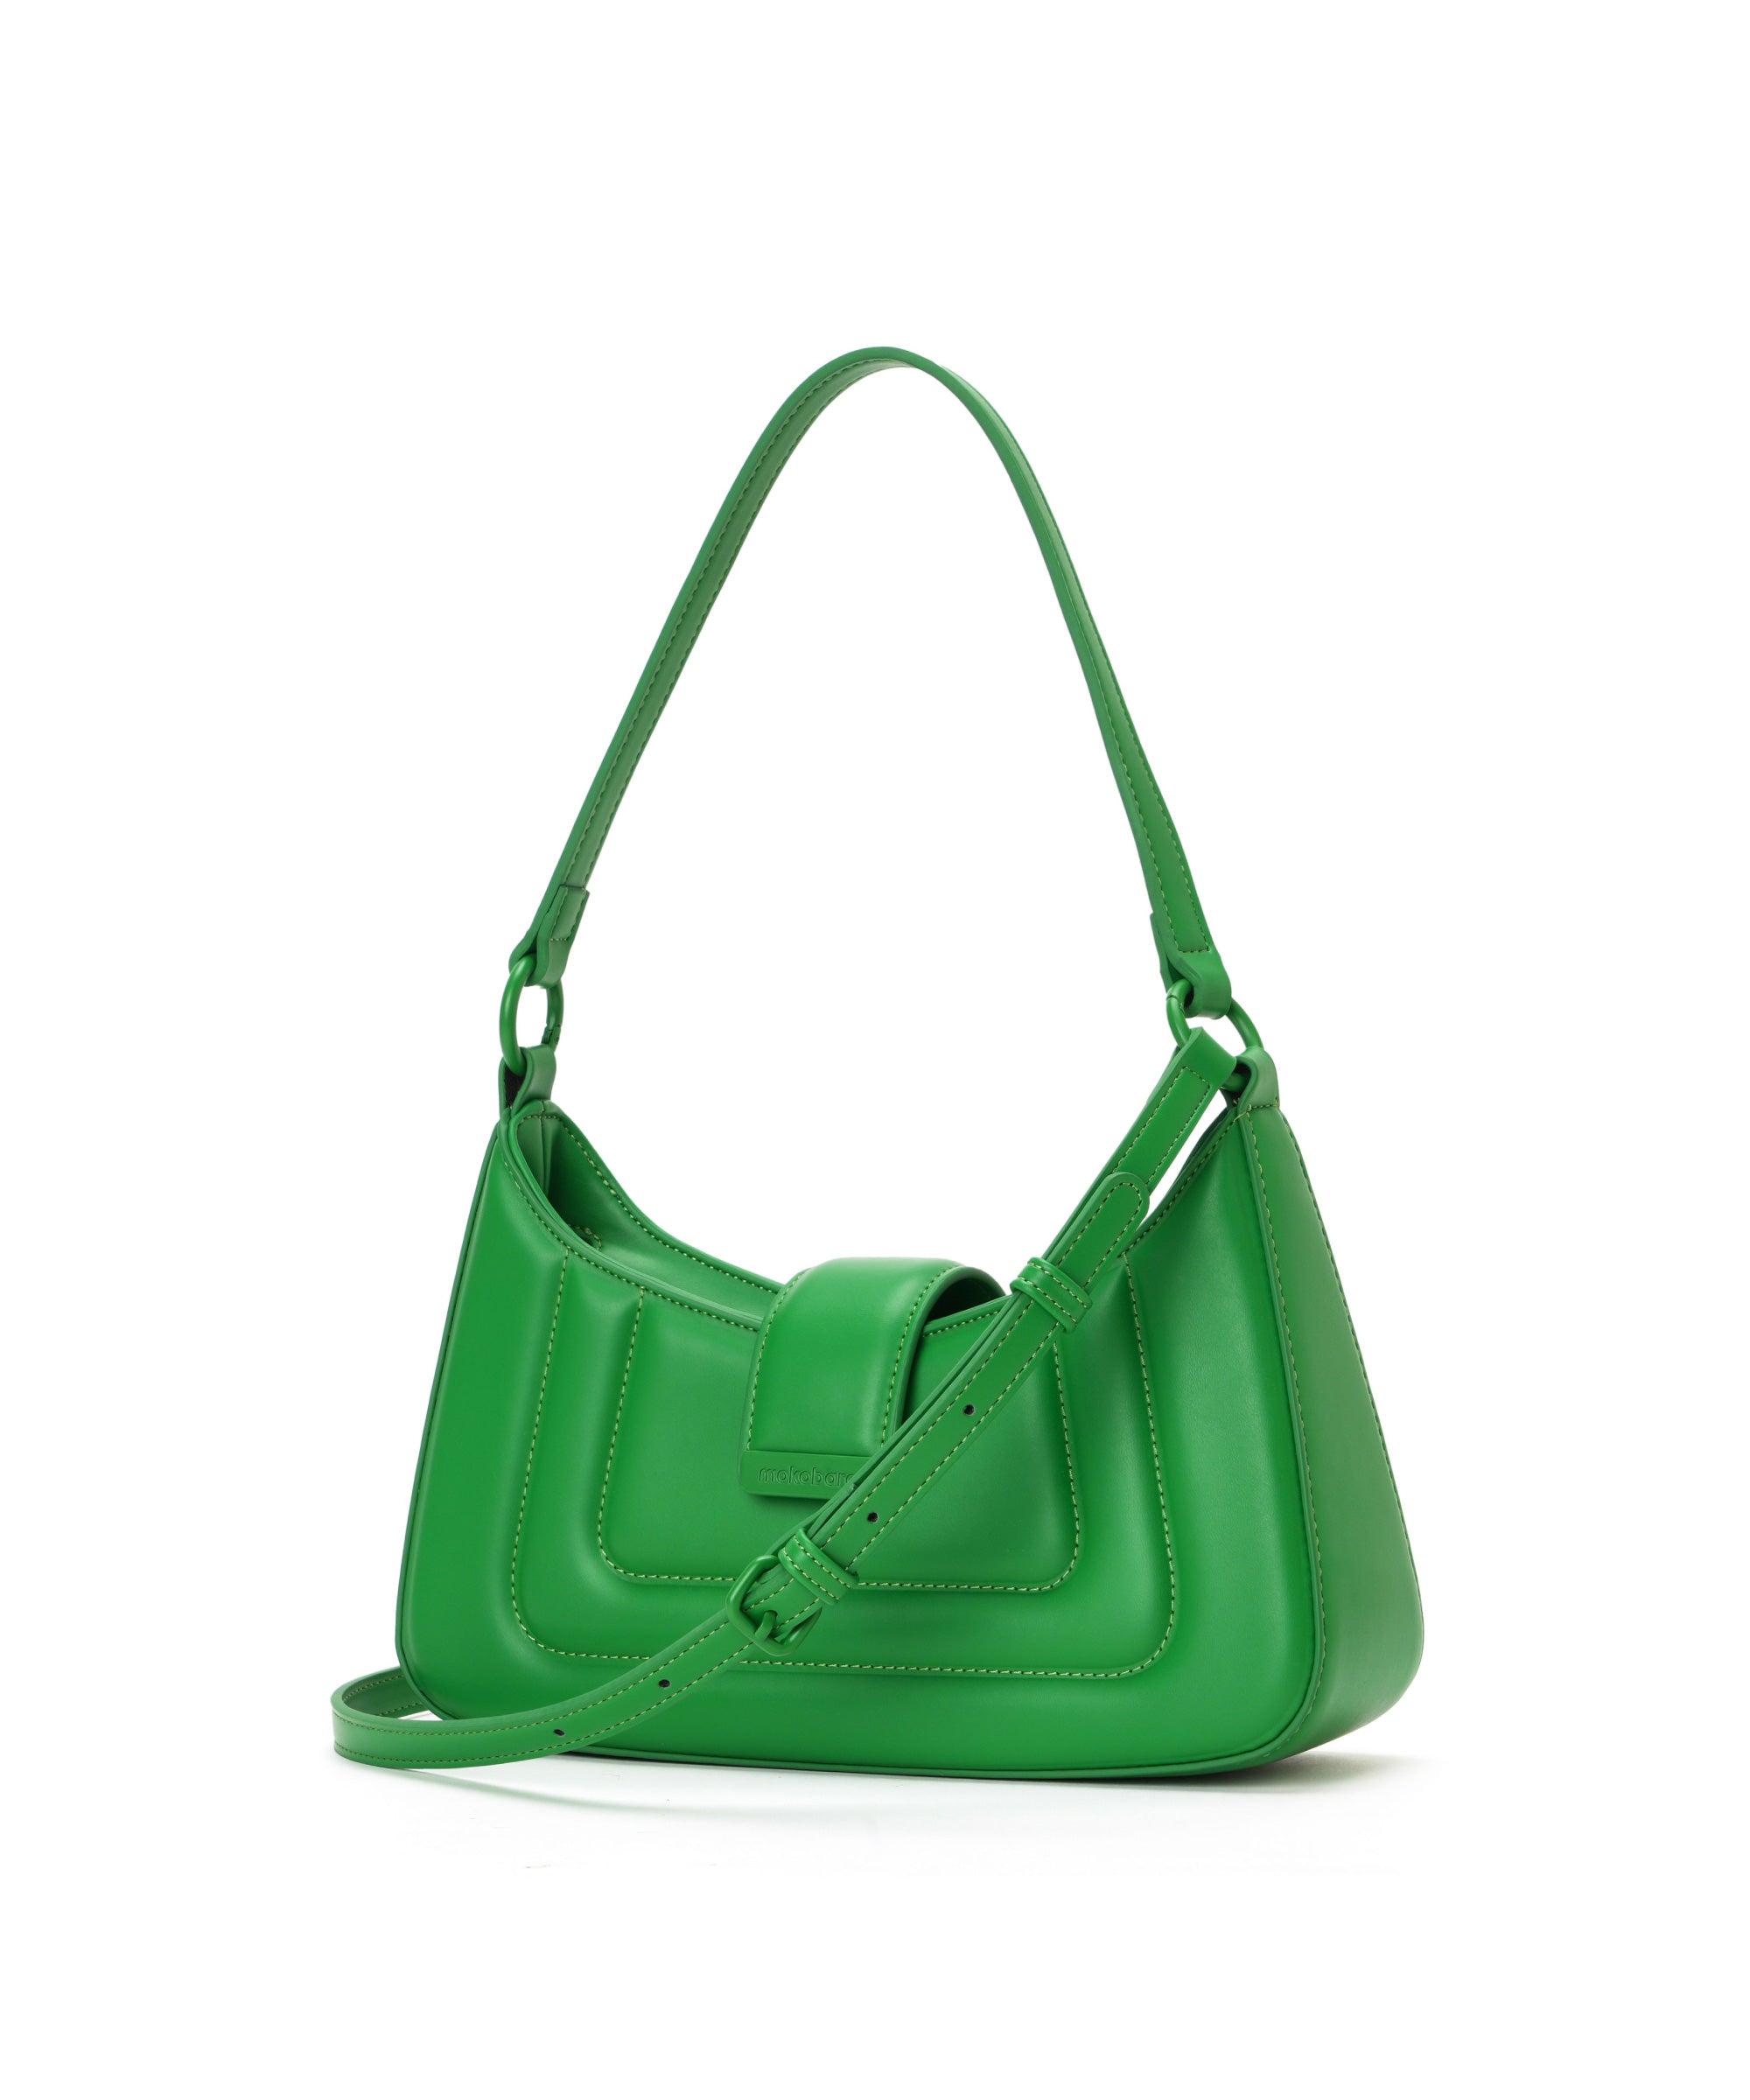 Color_Holidate | The Summer Handbag